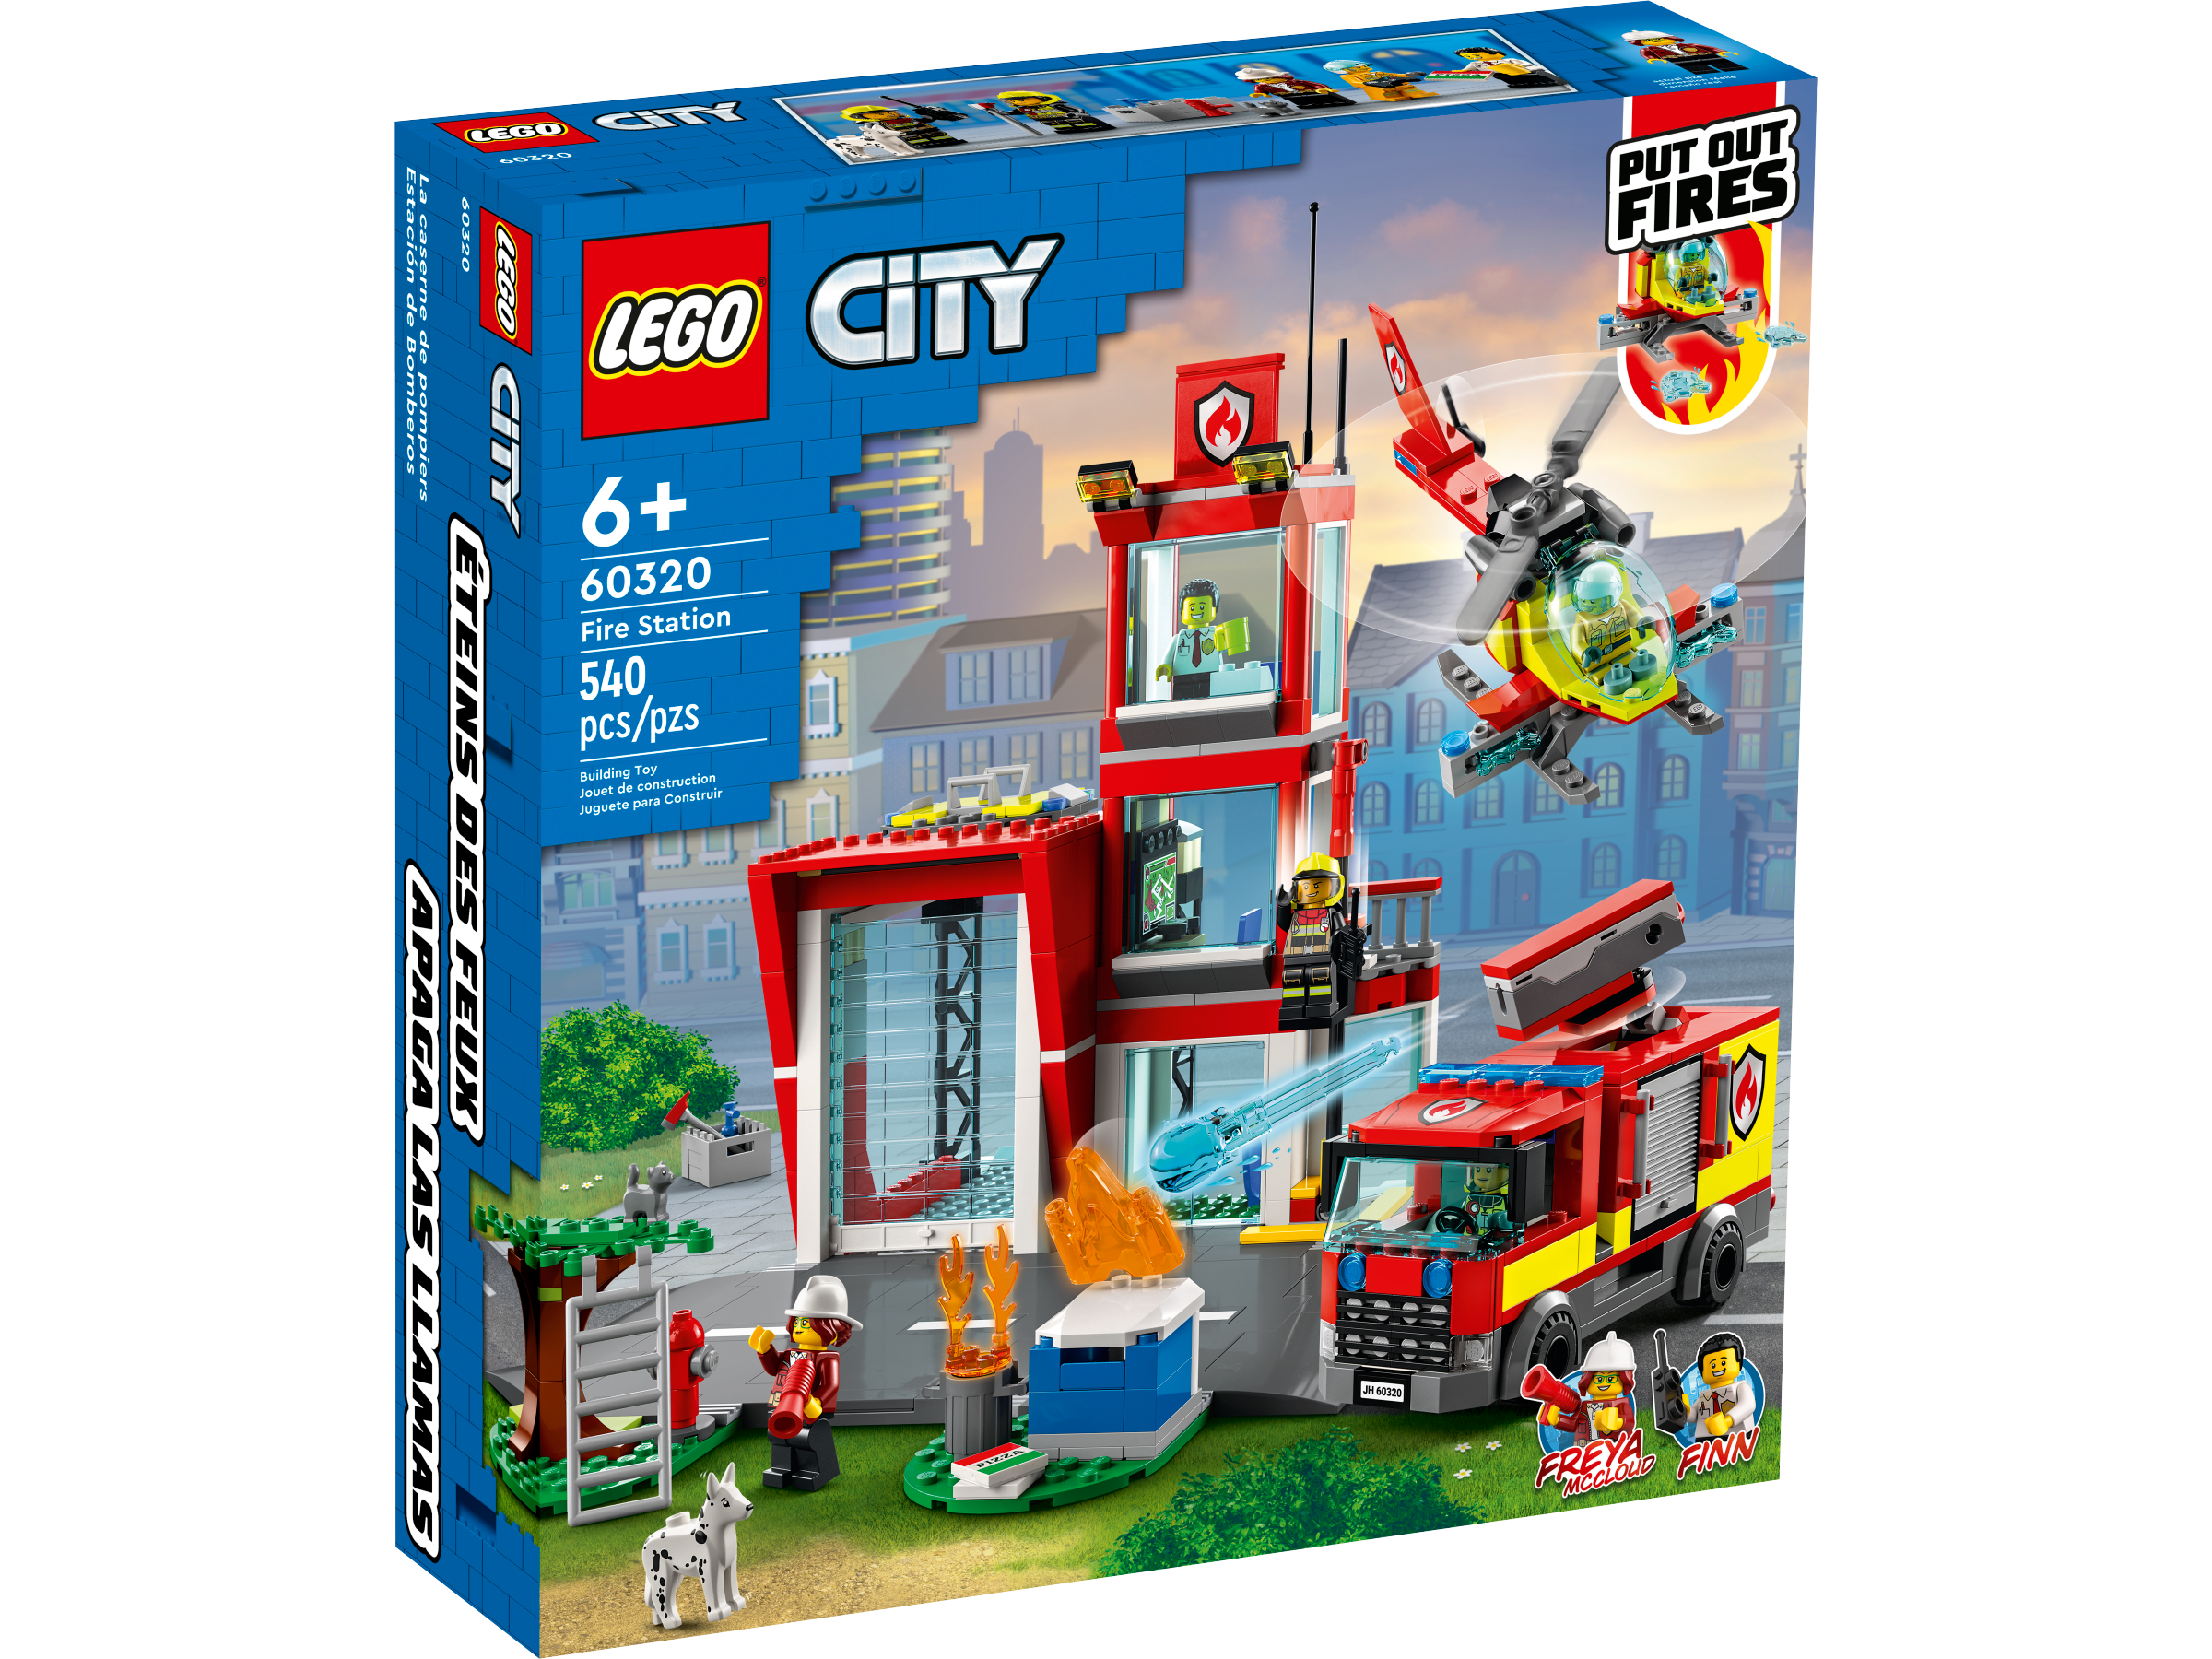 Caserne de pompiers lego city 60320